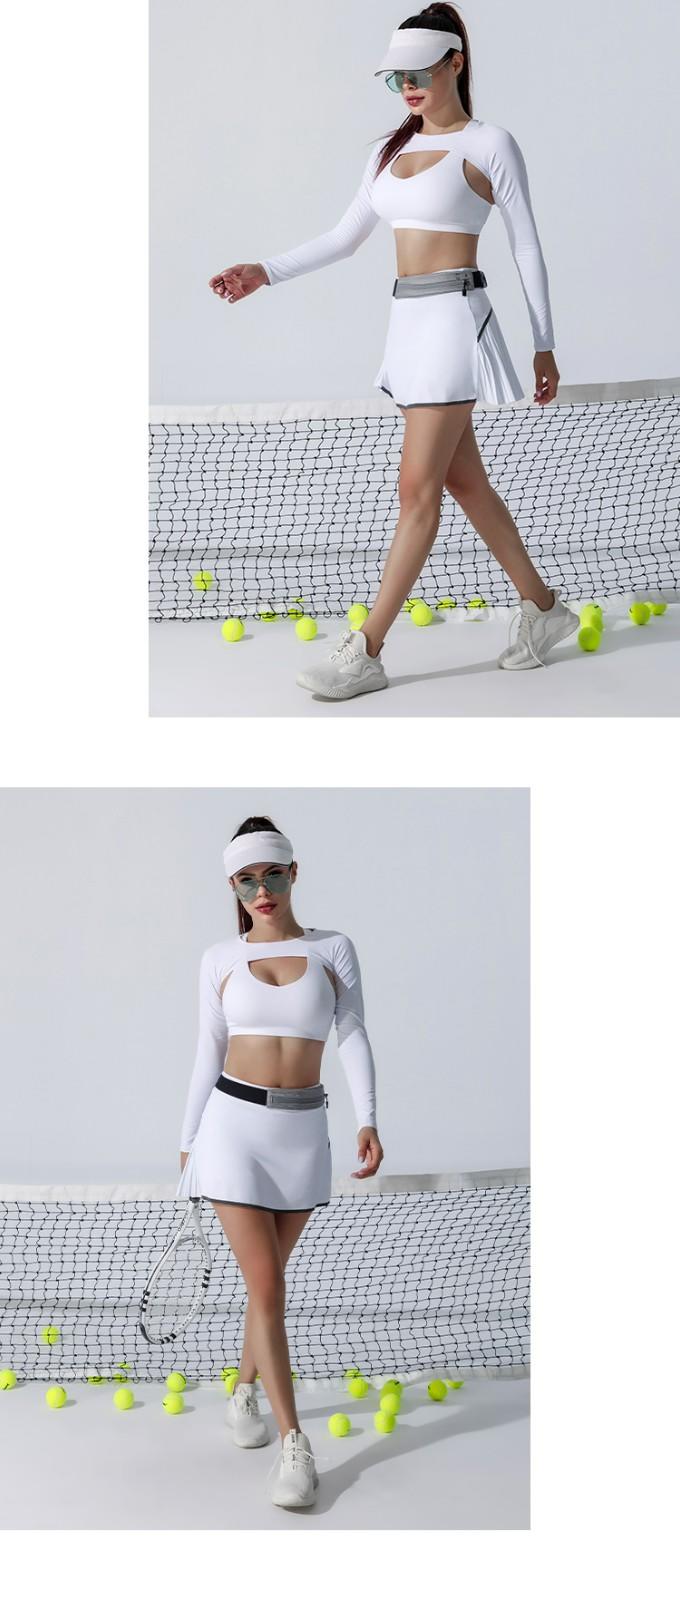 INGOR SPORTSWEAR soft tennis wear ladies supplier for ladies